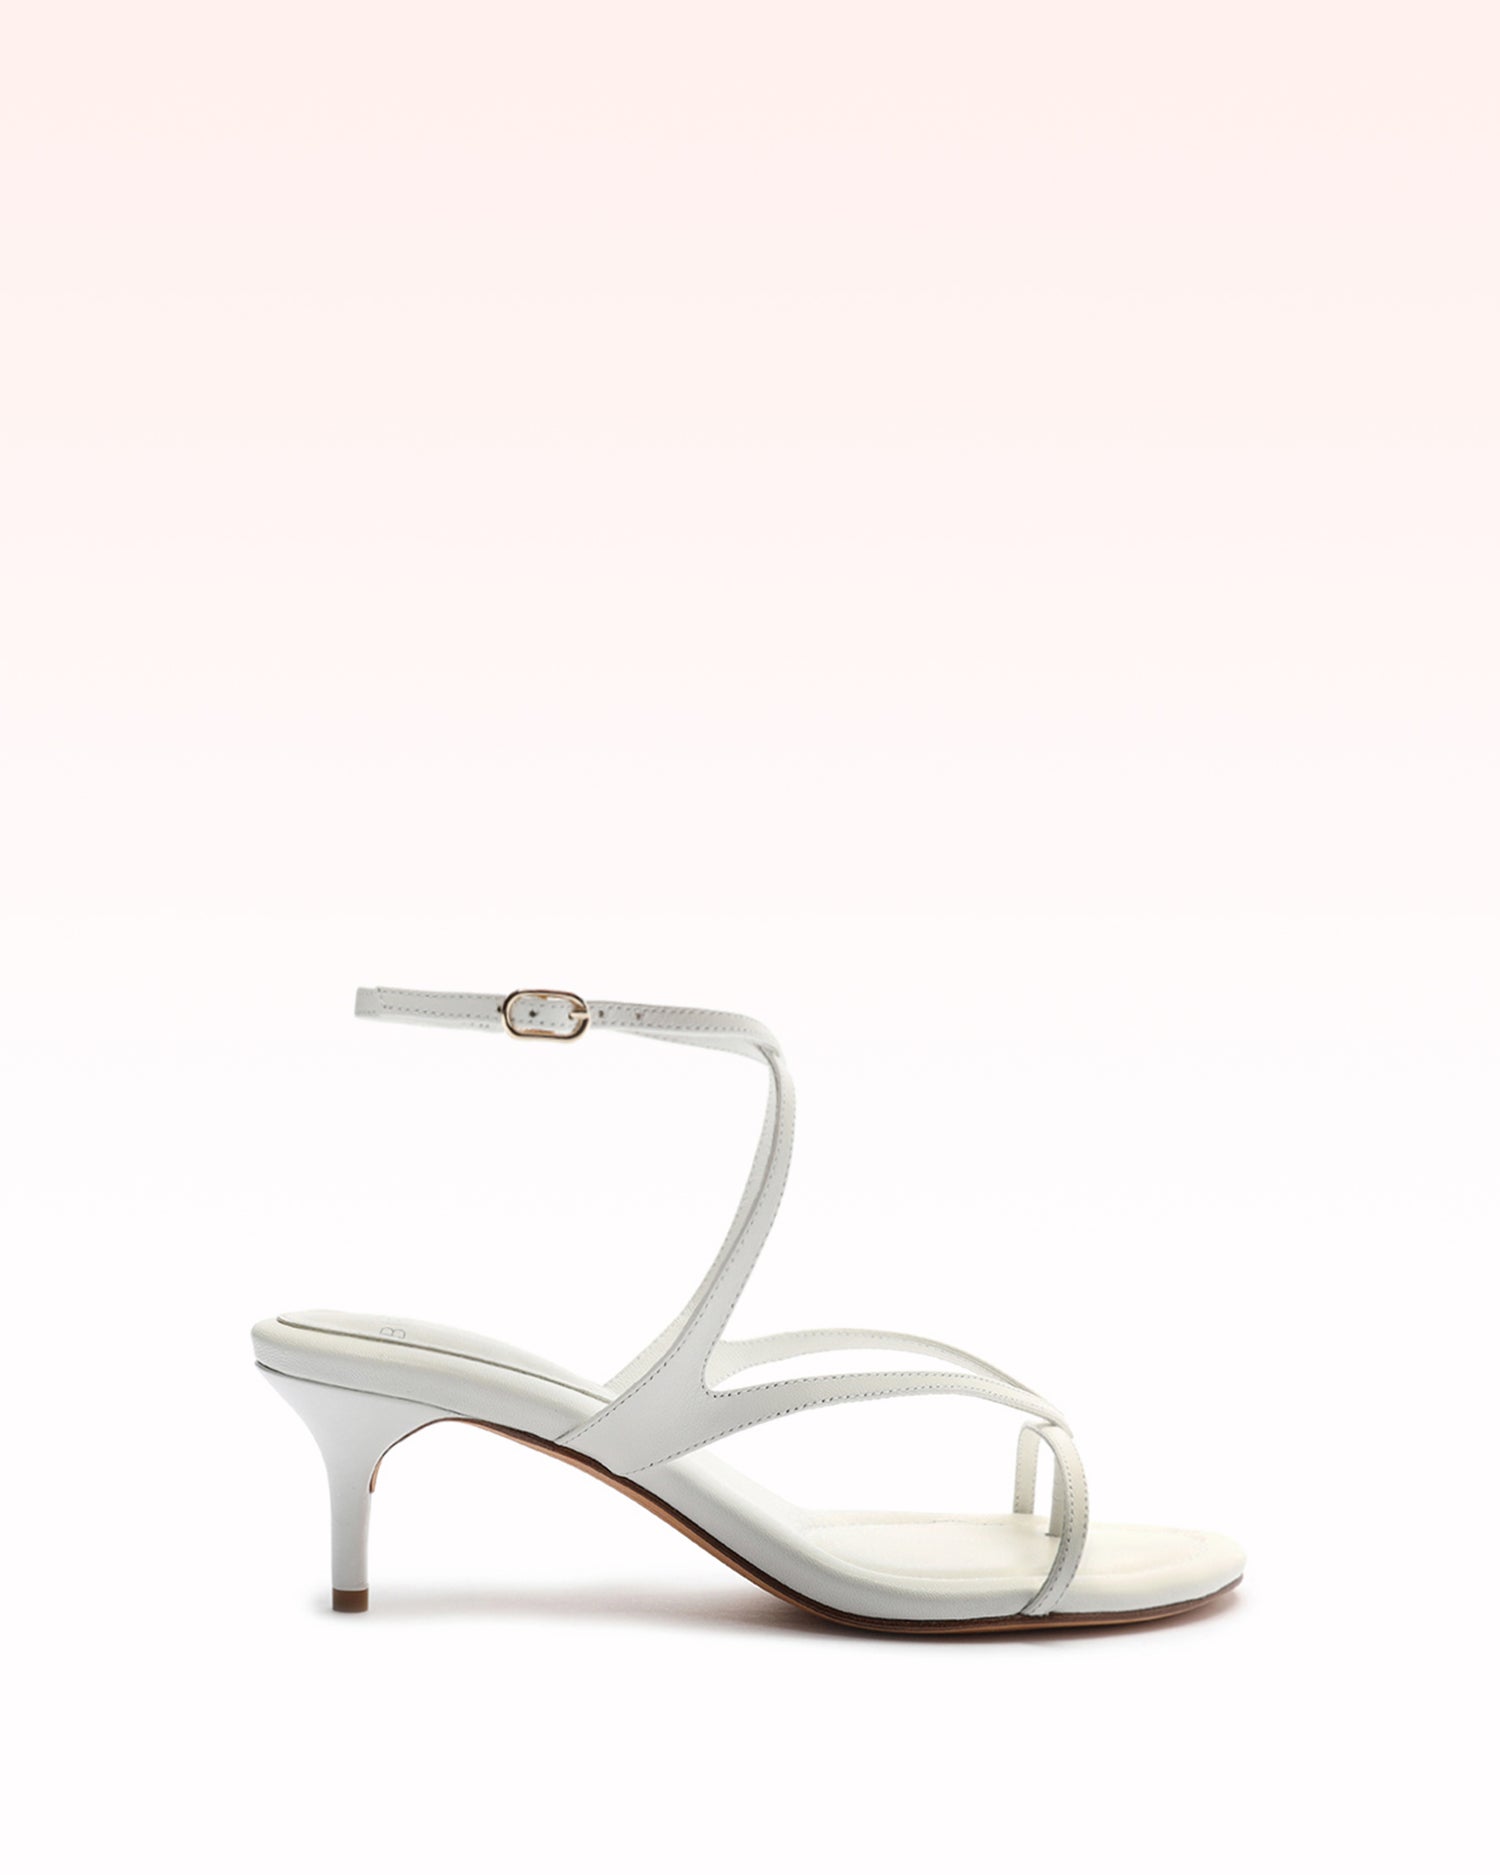 Alicia 50 White Sandal Sandals Sale 35 White Nappa Leather